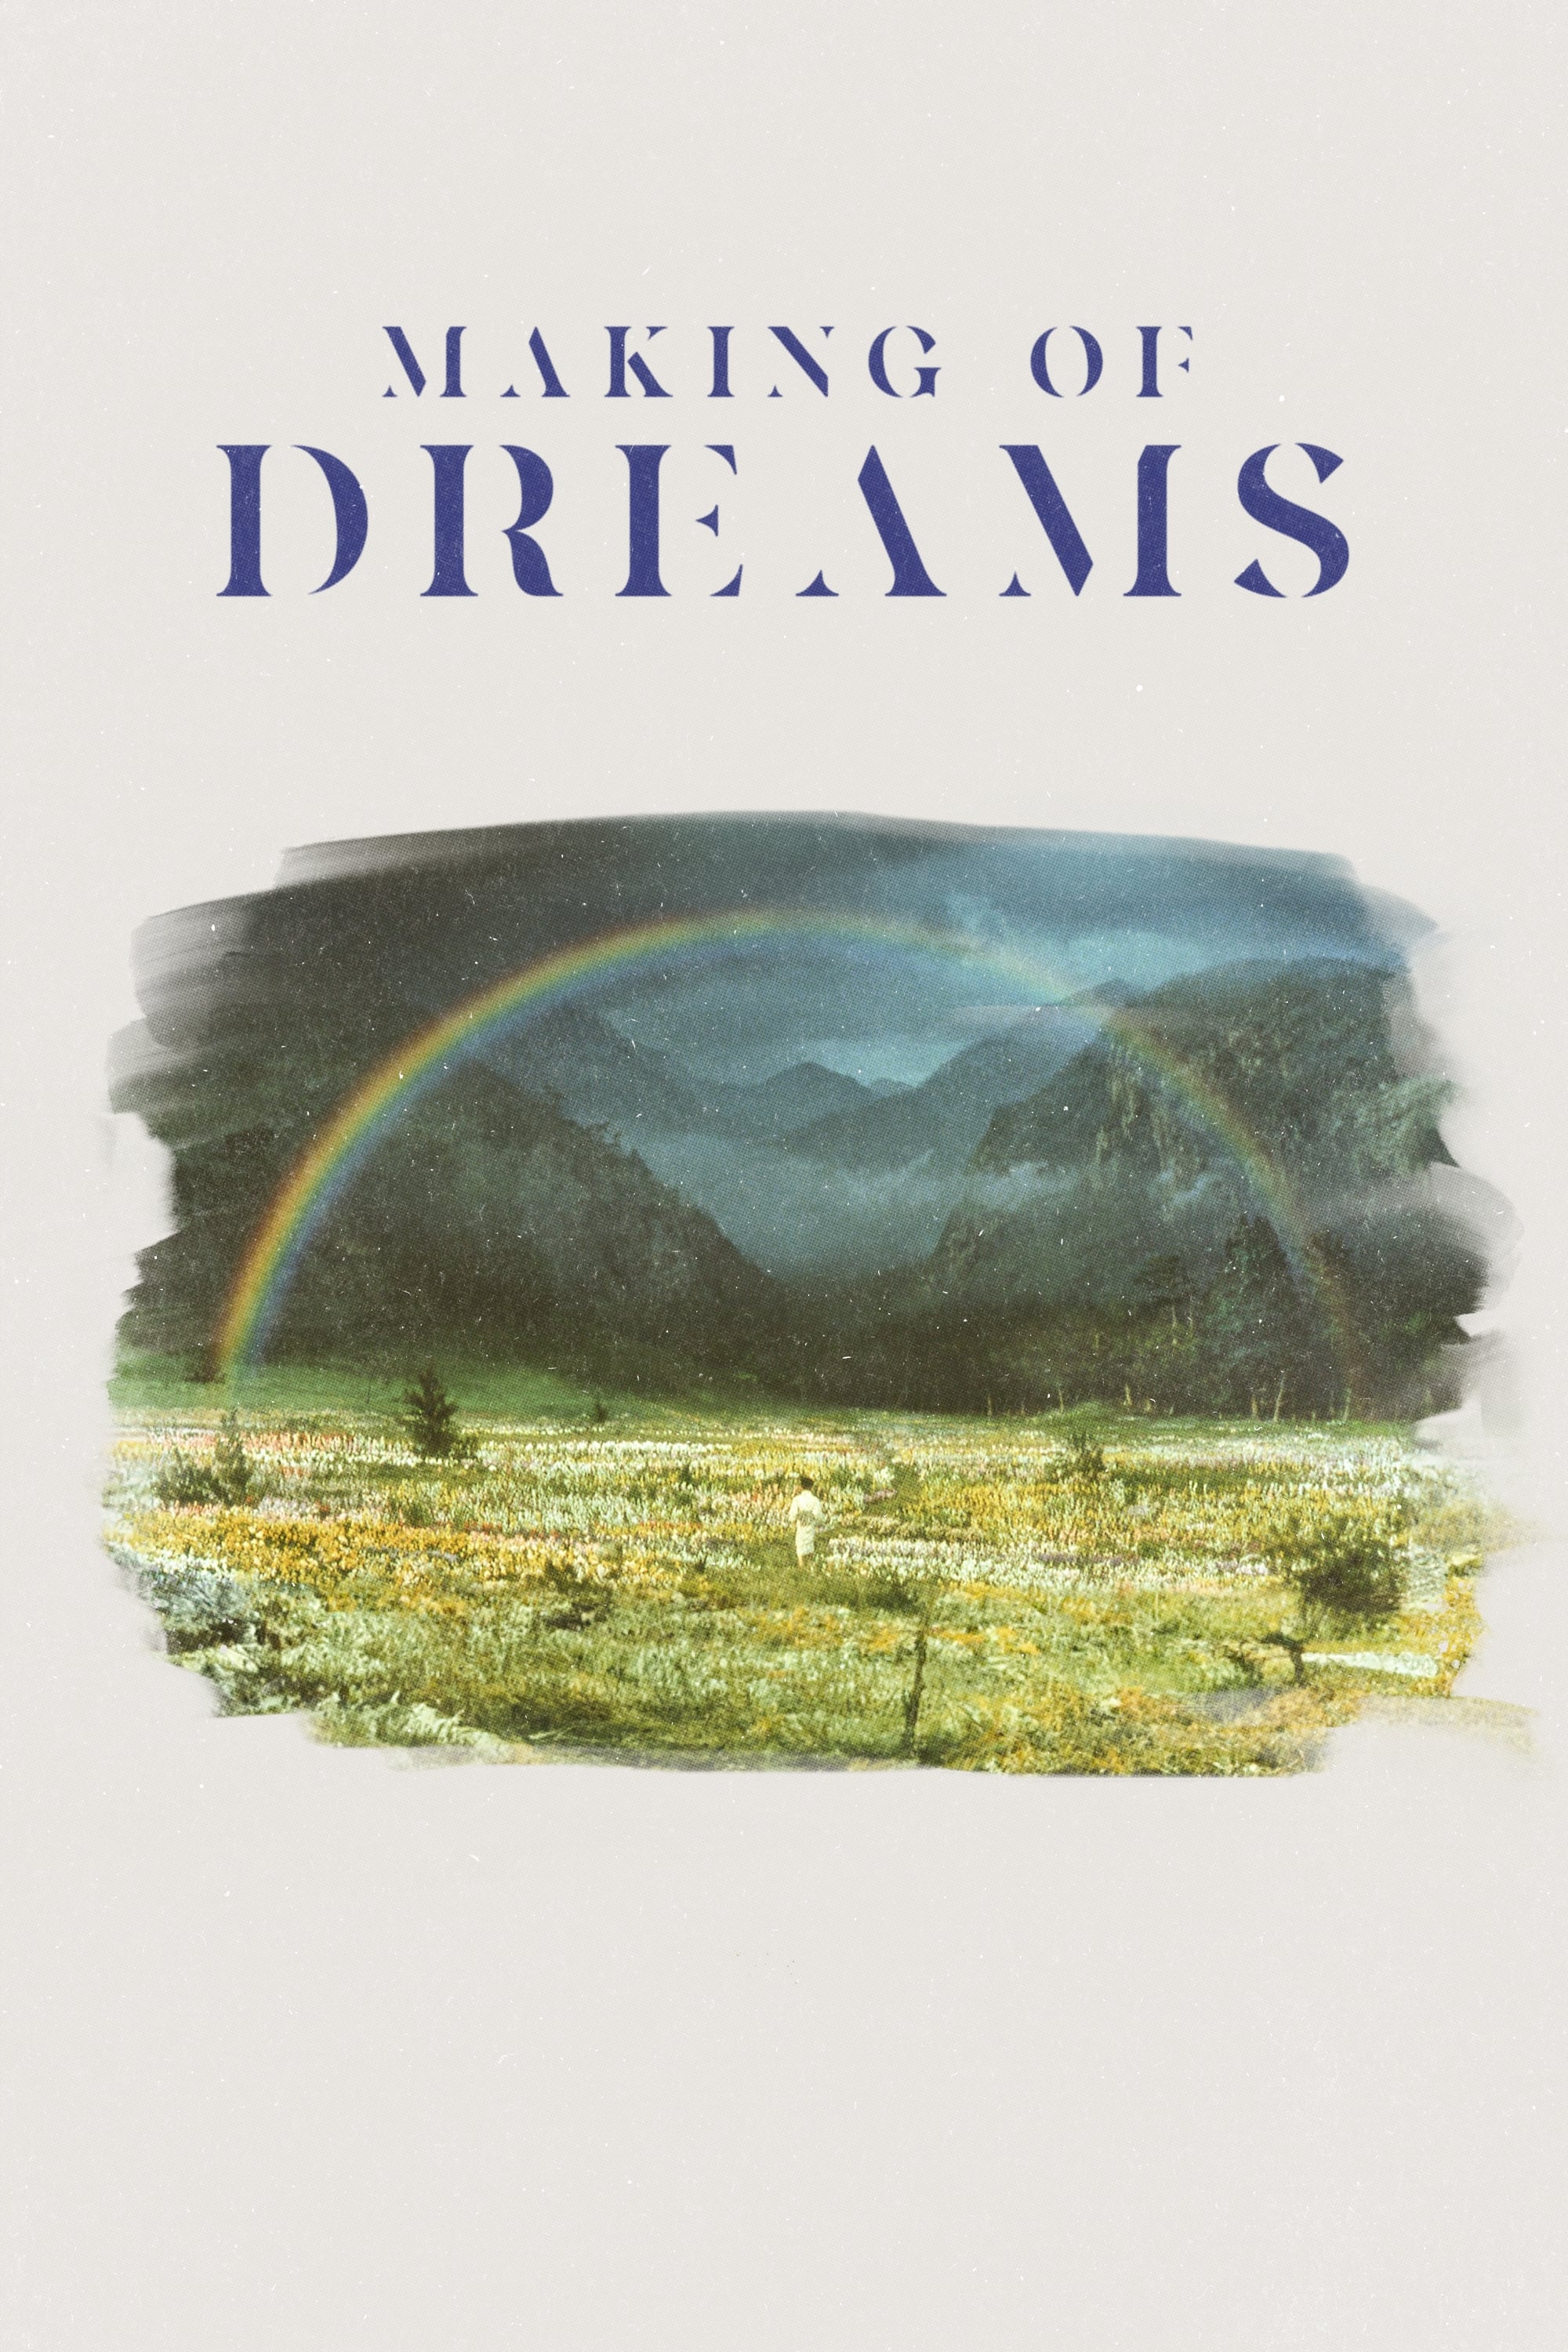 Making of Dreams: A Movie Conversation between Akira Kurosawa and Nobuhiko Ôbayashi (1990)